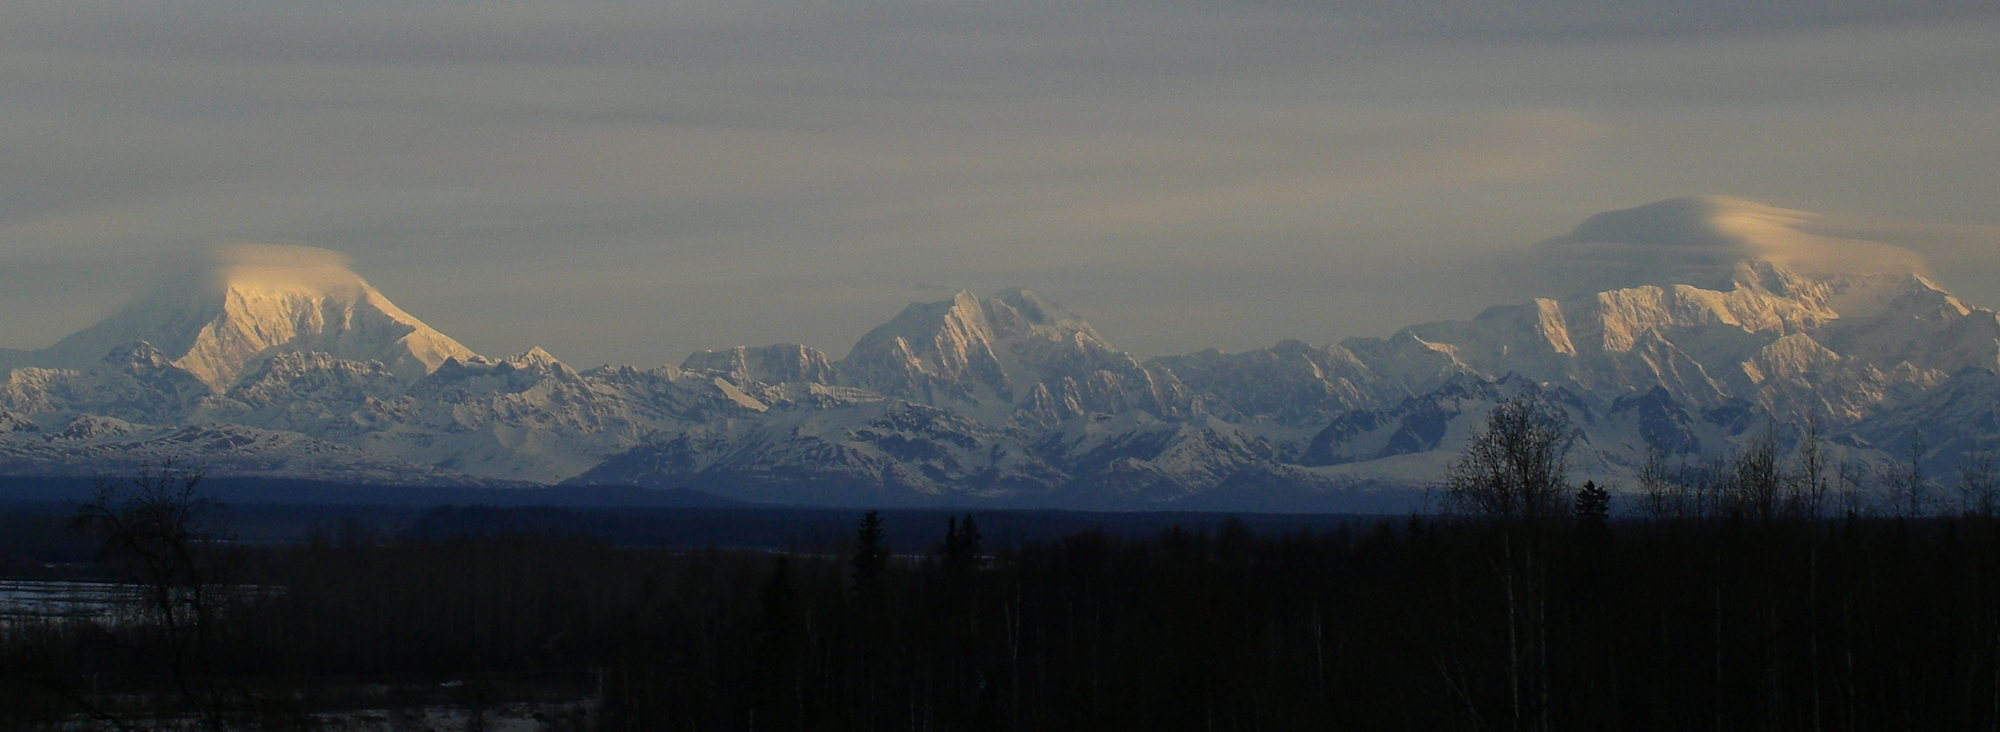 Большая тройка Аляски: Форакер, Денали и Хантер. Фото mountainproject . com